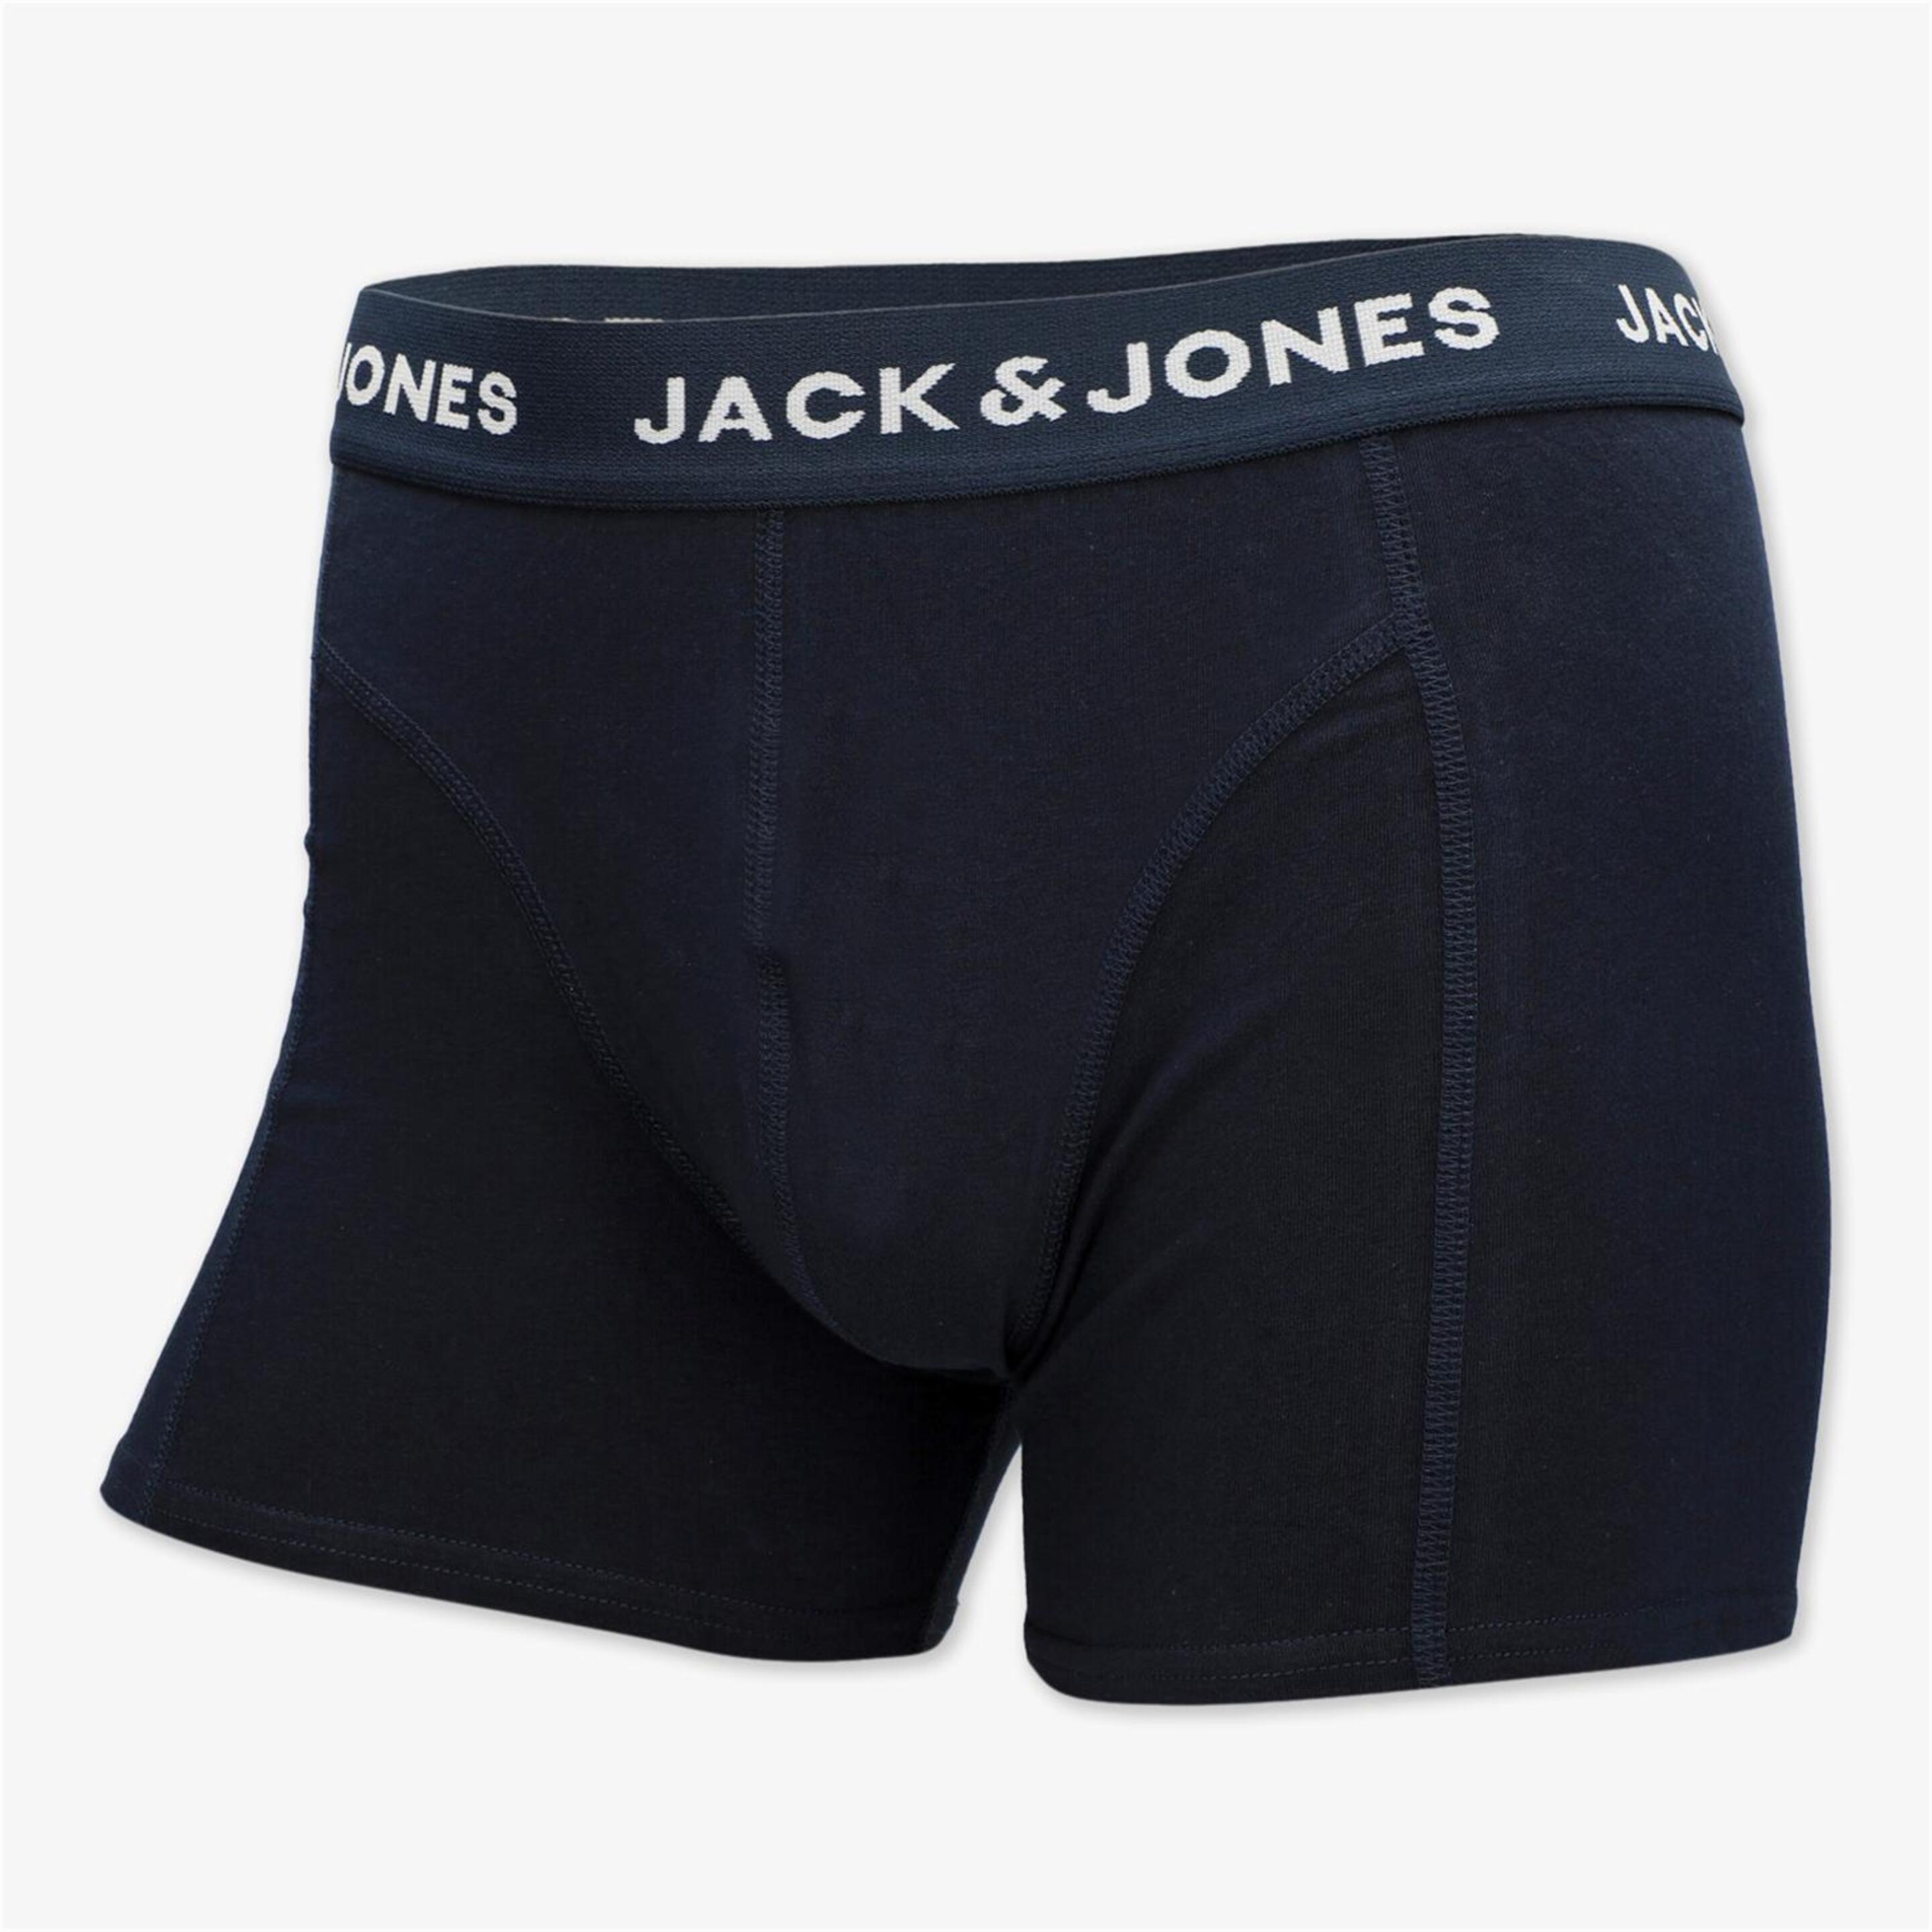 Jack & Jones Jacanthony - Gris - Calzoncillos Bóxer